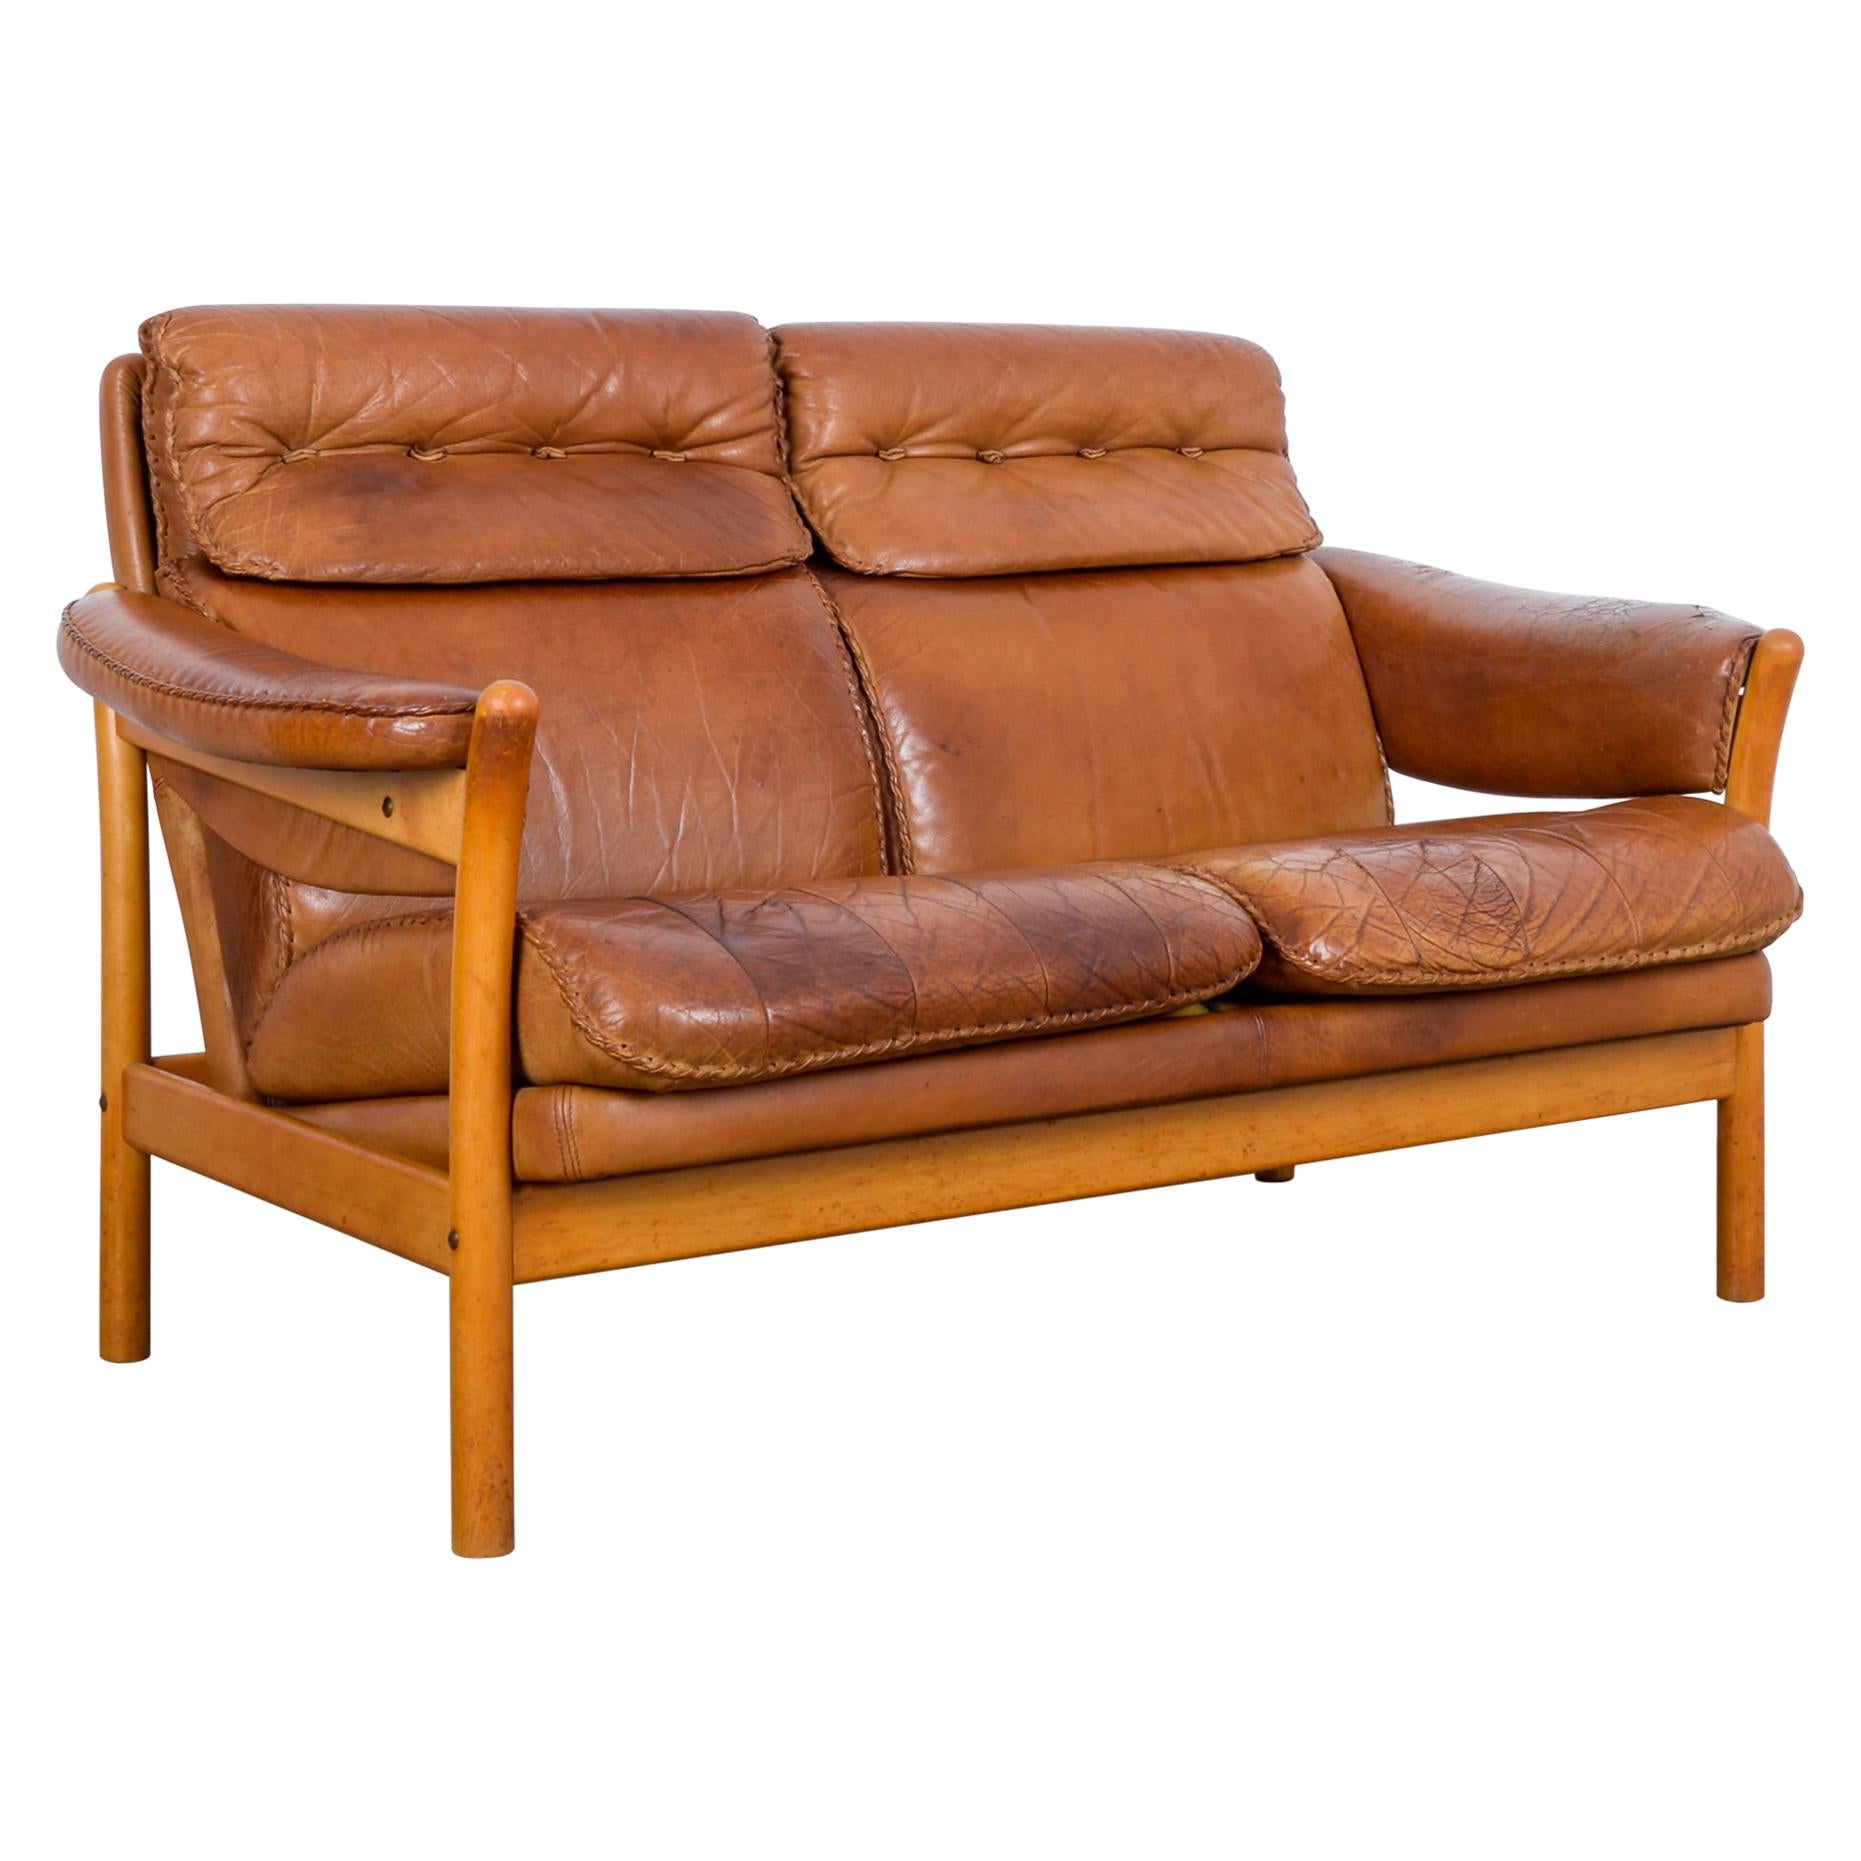 1960s Danish Stitched Leather Sofa